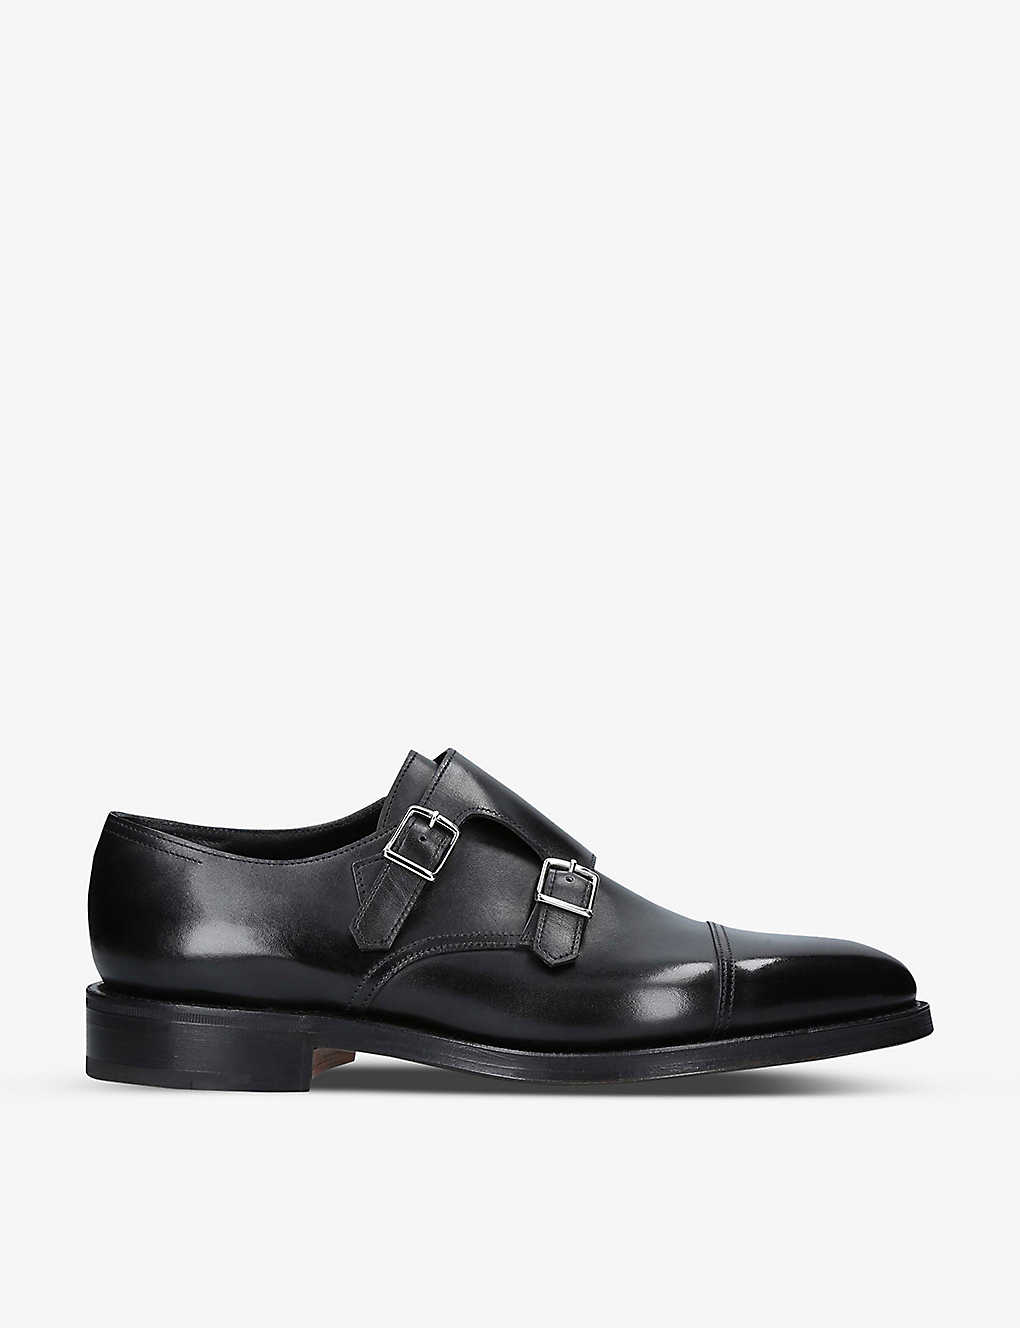 Shop John Lobb Mens Black William Double-buckle Leather Monk Shoes